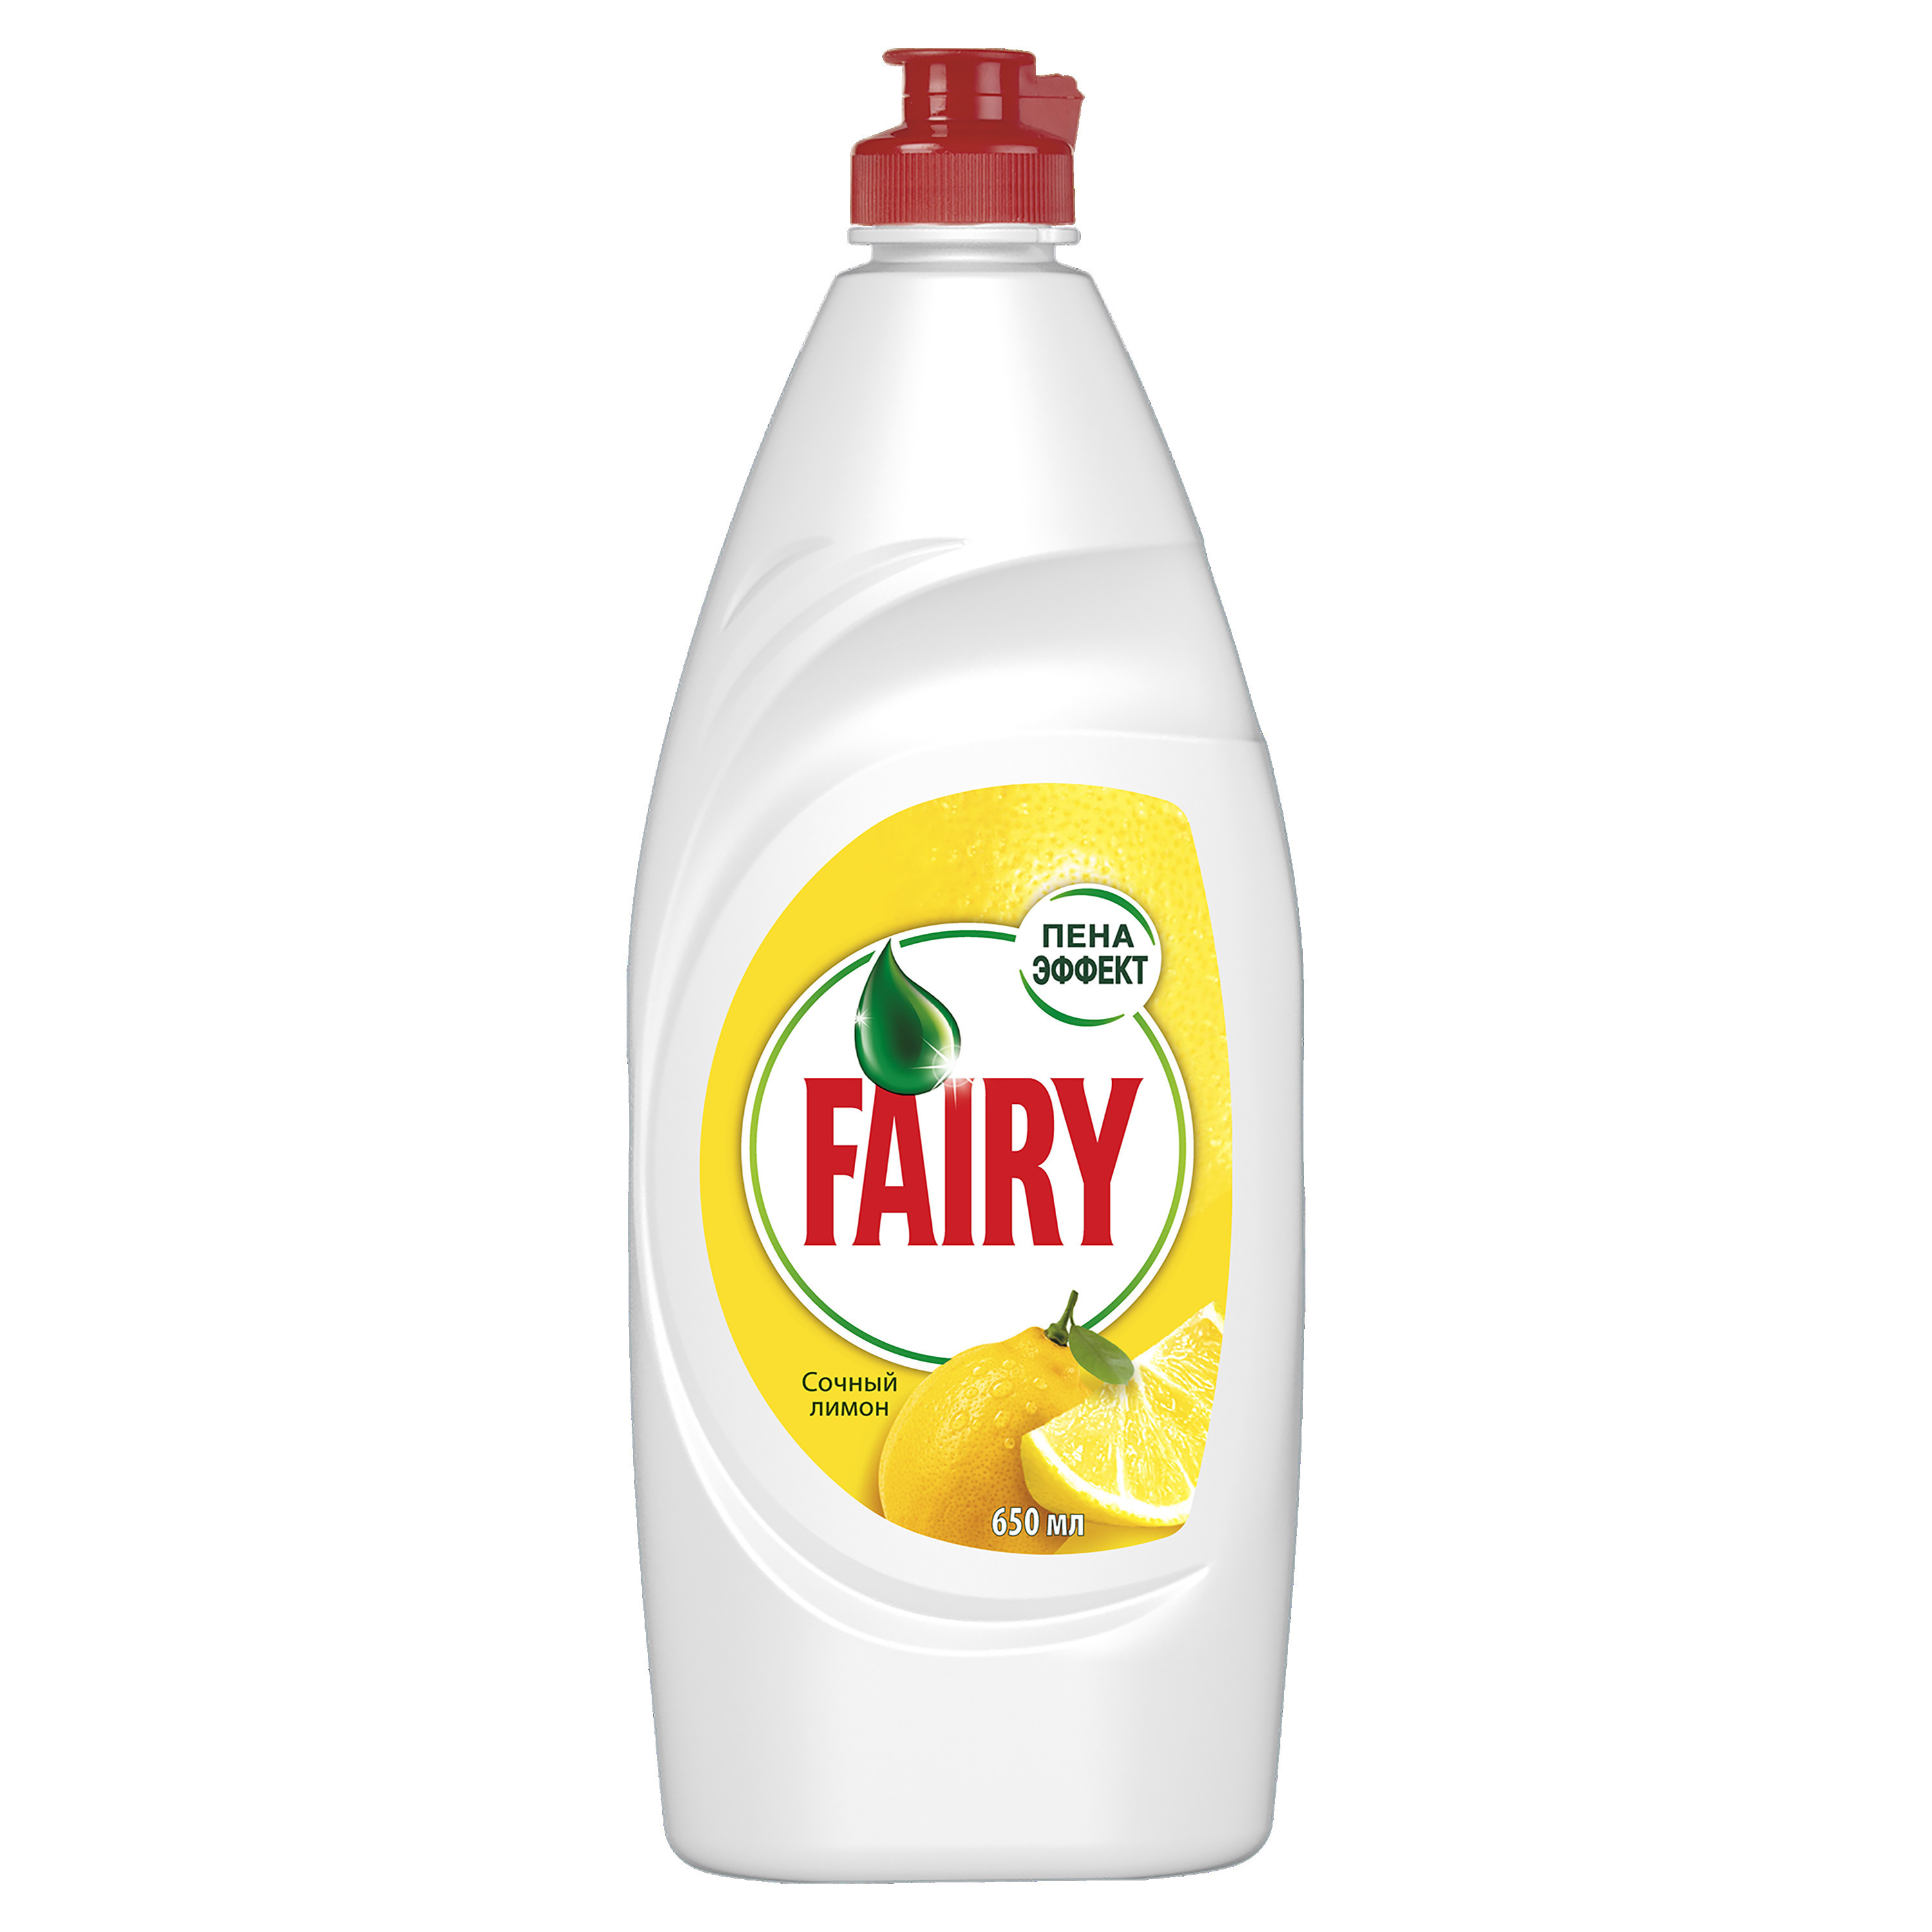 Фейри мыть посуду. Fairy средство для мытья посуды сочный лимон 450мл. Fairy 650 ml сочный лимон. Fairy средство для мытья посуды сочный лимон 650мл. Средство для мытья посуды Фейри сочный лимон.